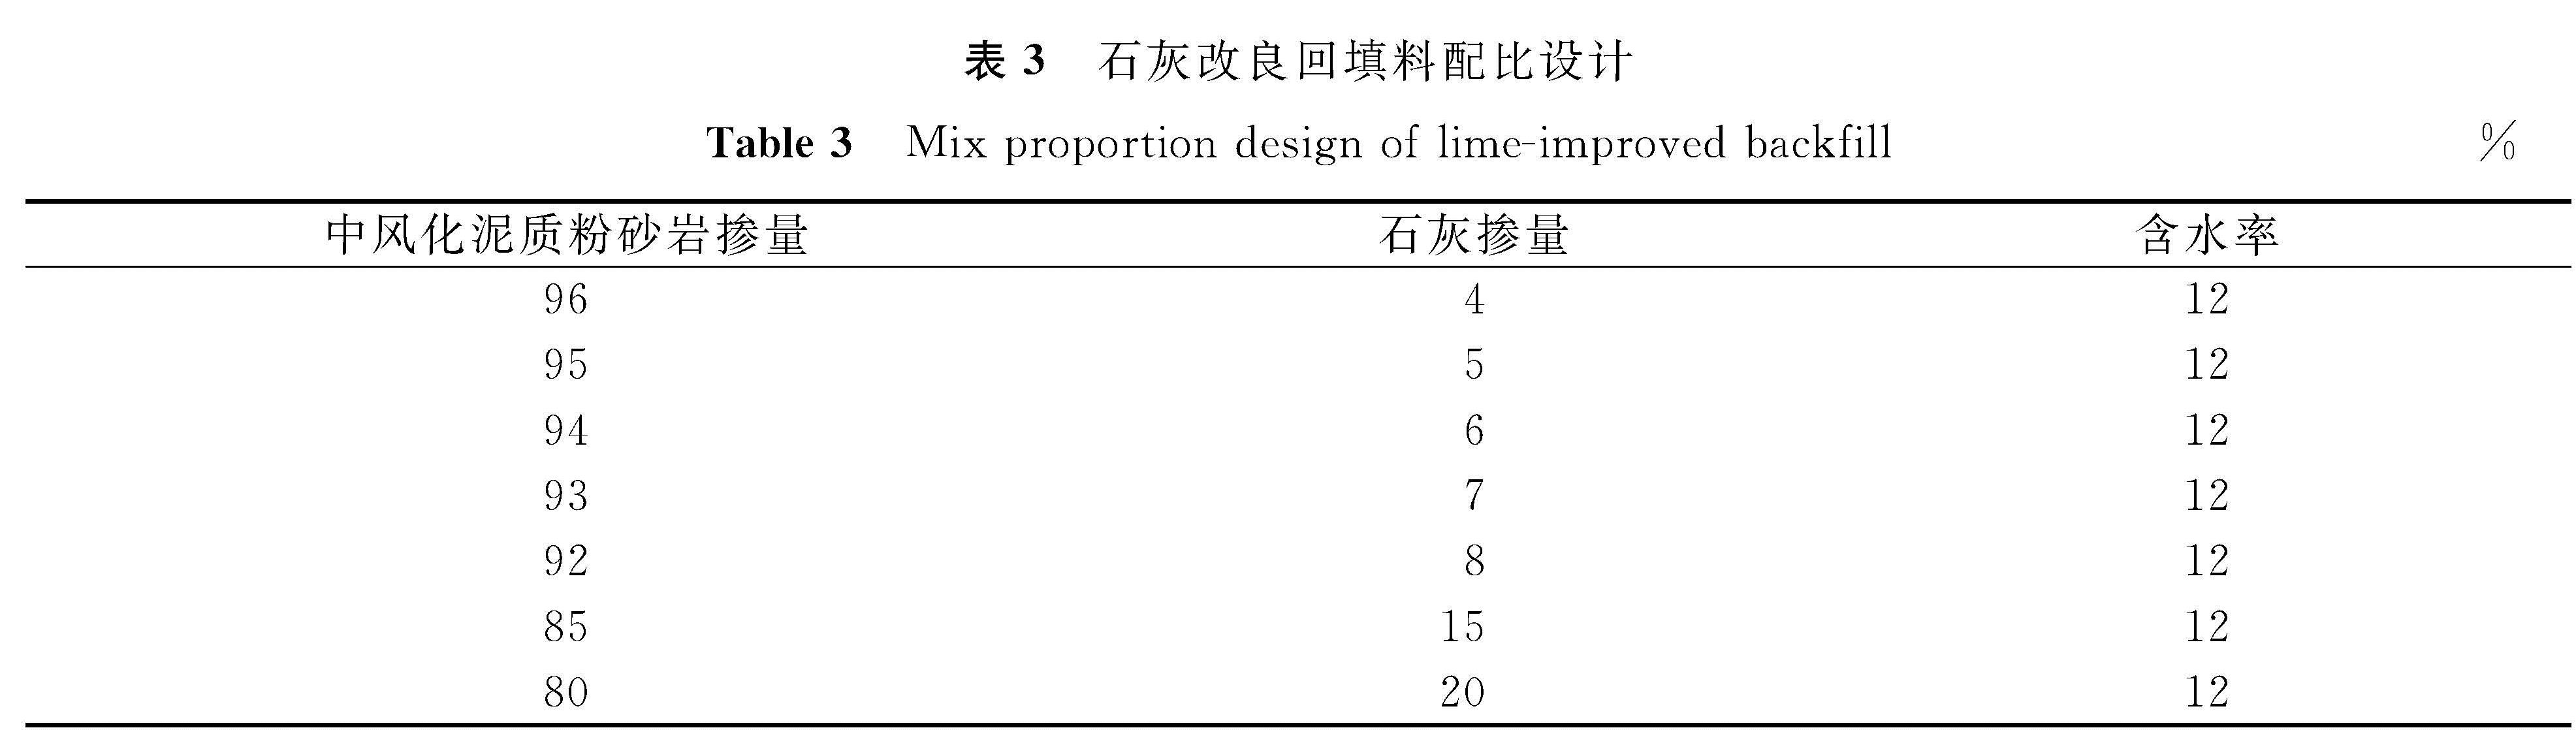 表3 石灰改良回填料配比设计<br/>Table 3 Mix proportion design of lime-improved backfill%